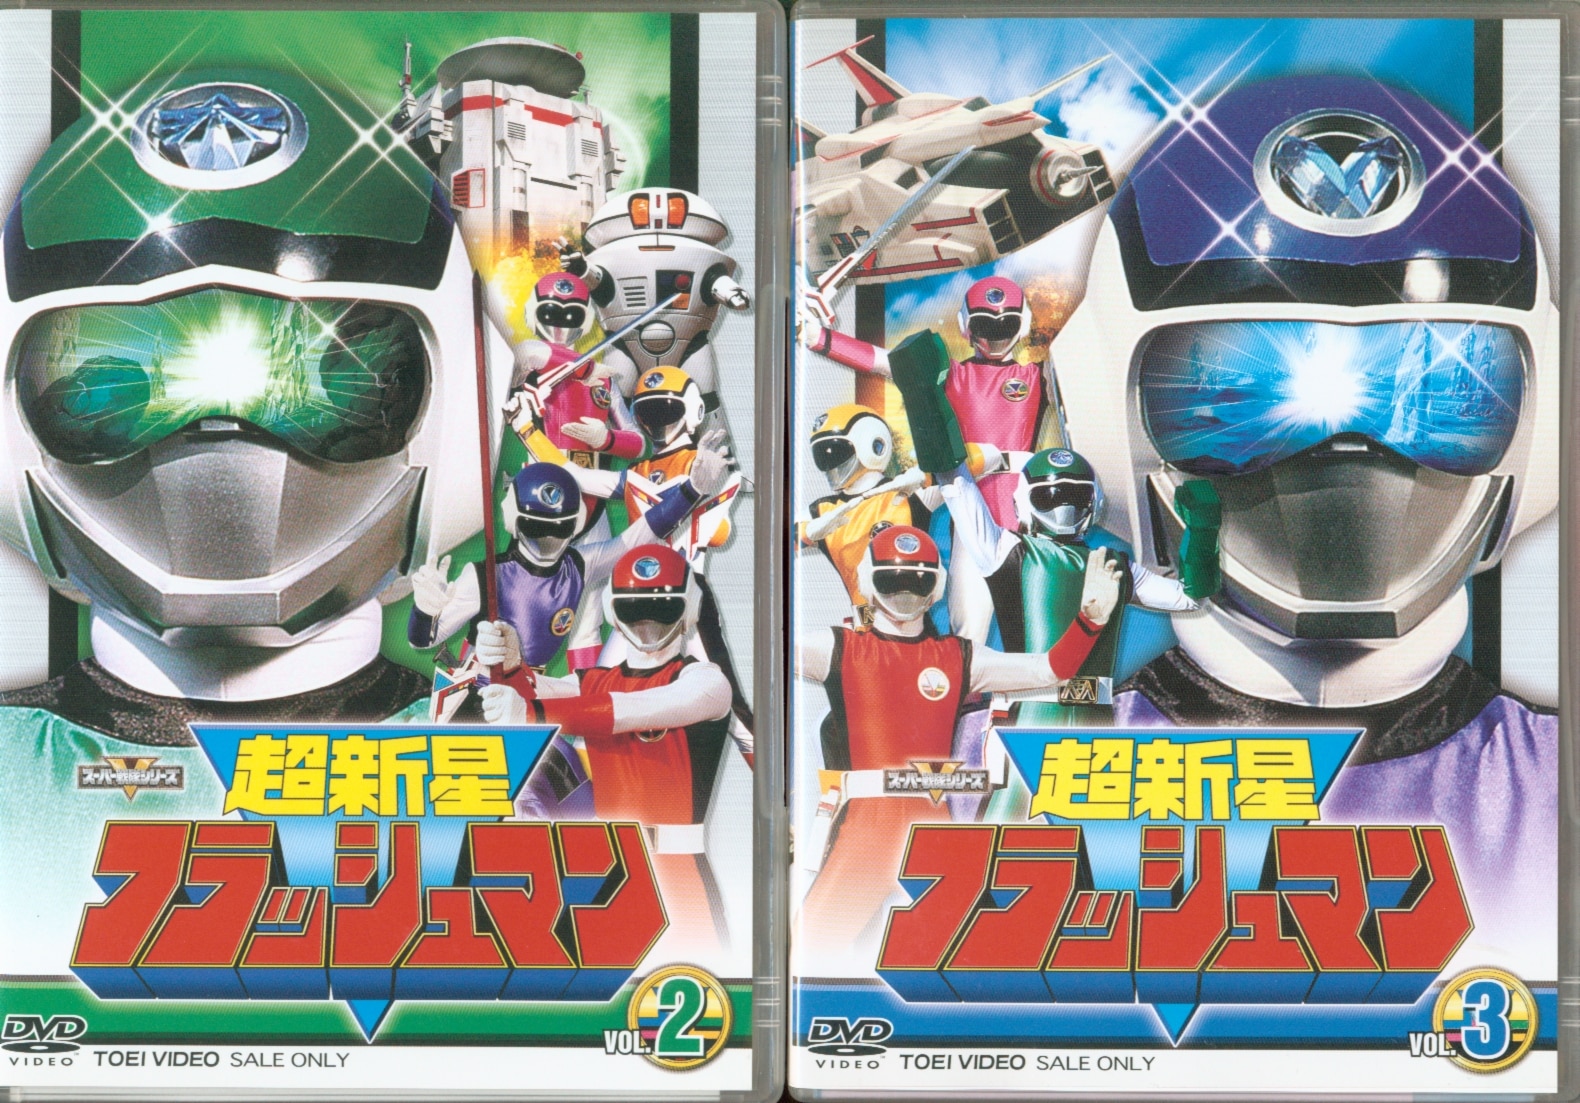 在庫処分セール スーパー戦隊シリーズ 超新星フラッシュマン Amazon.co.jp: VOL.4 [DVD] (shin DVD